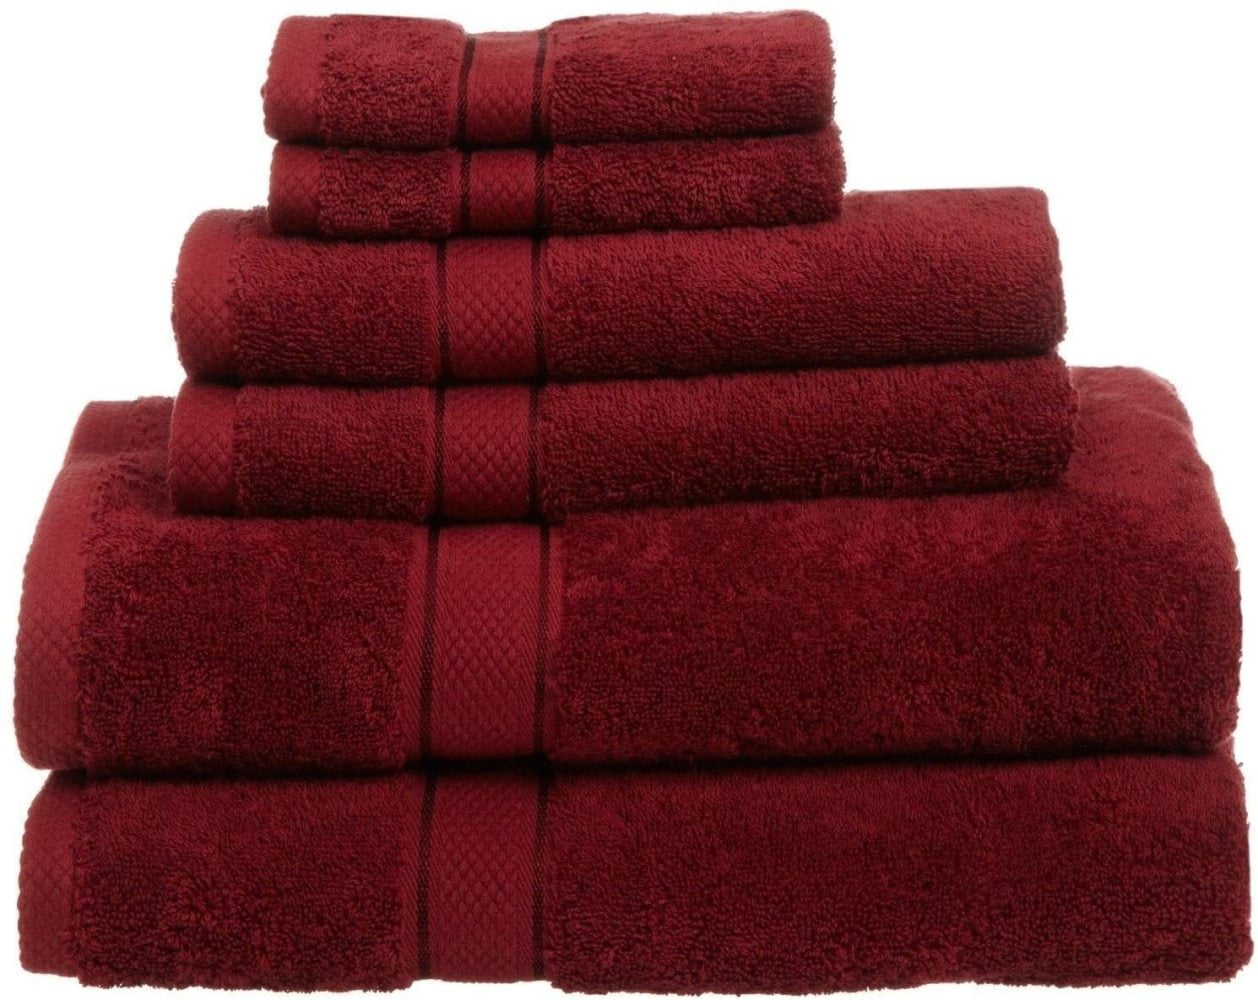 6 Piece Towels Set Egyptian Cotton 725 Gram Multiple COLORS Bath Towel Set 